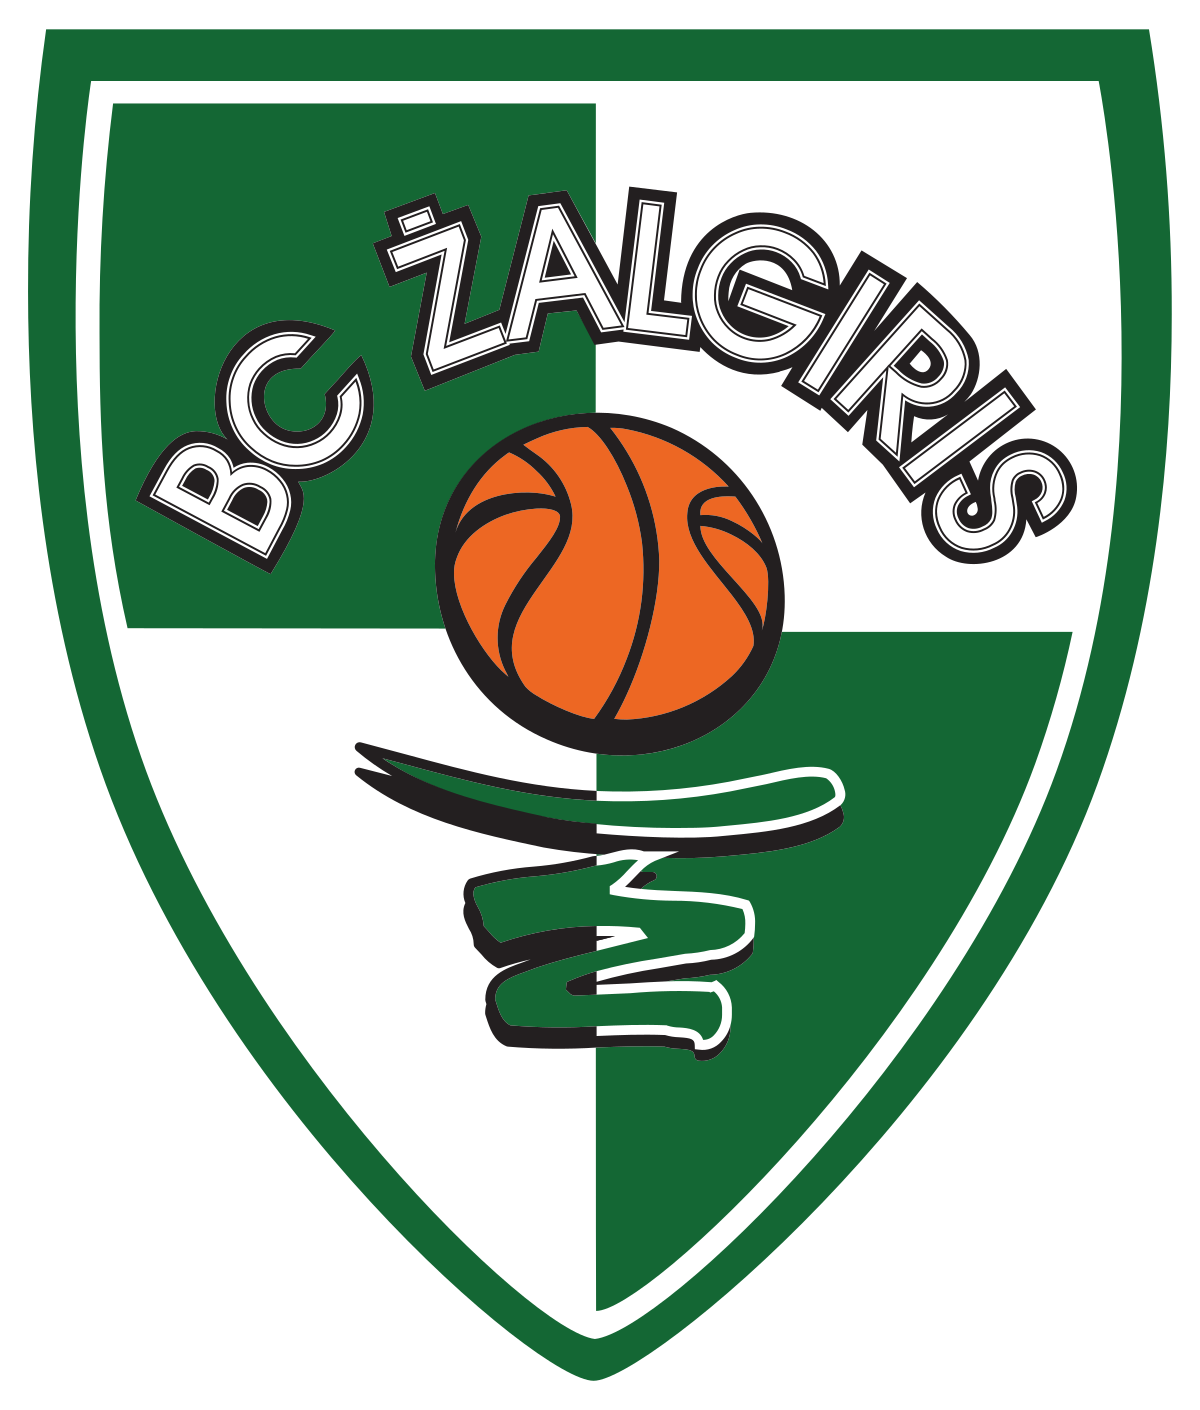 Kauno Zalgiris-2 logo